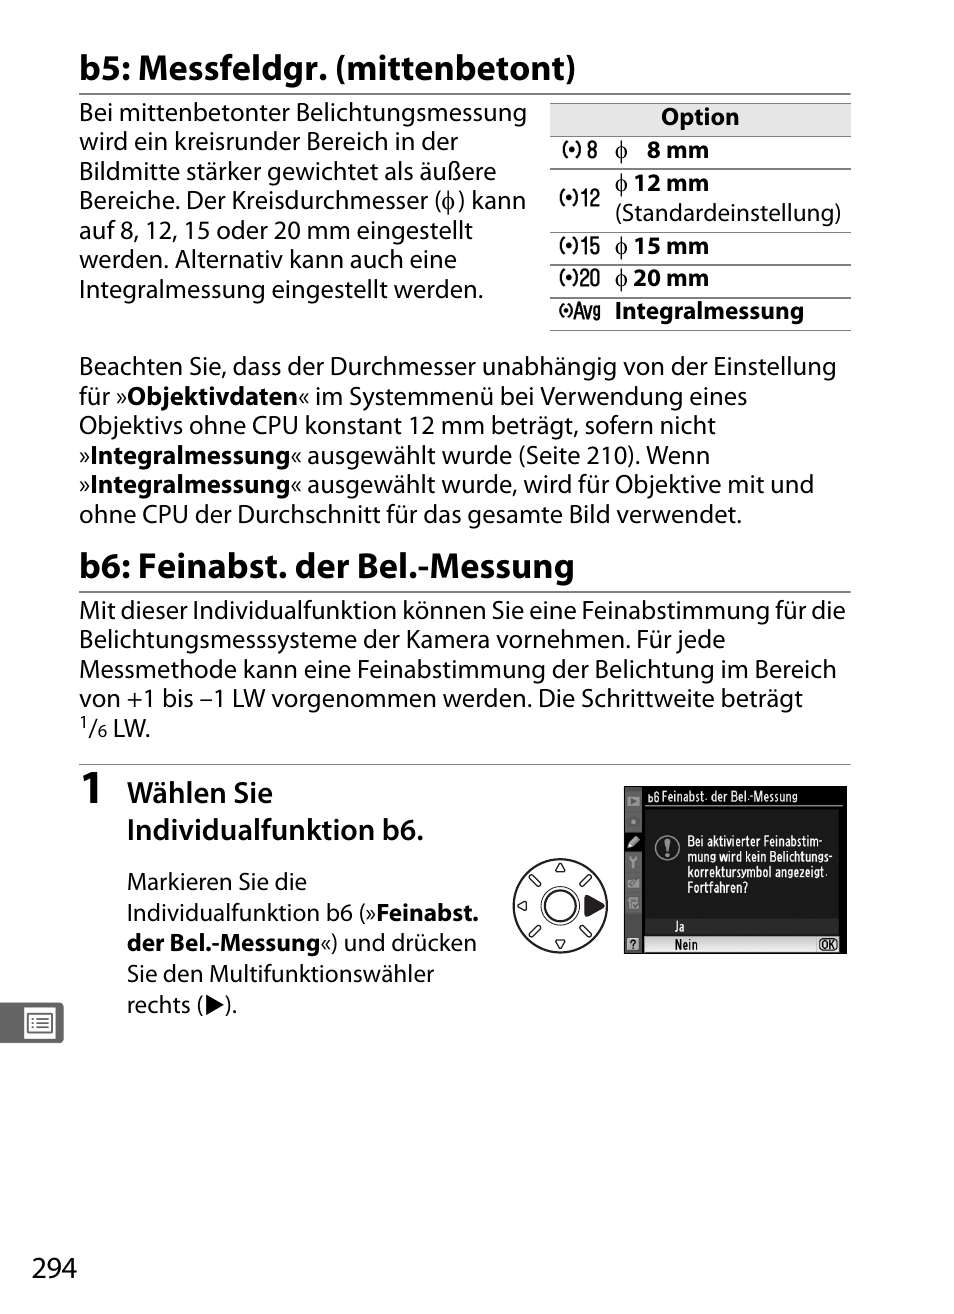 B5: messfeldgr. (mittenbetont), B6: feinabst. der bel.-messung | Nikon D700 Benutzerhandbuch | Seite 320 / 472